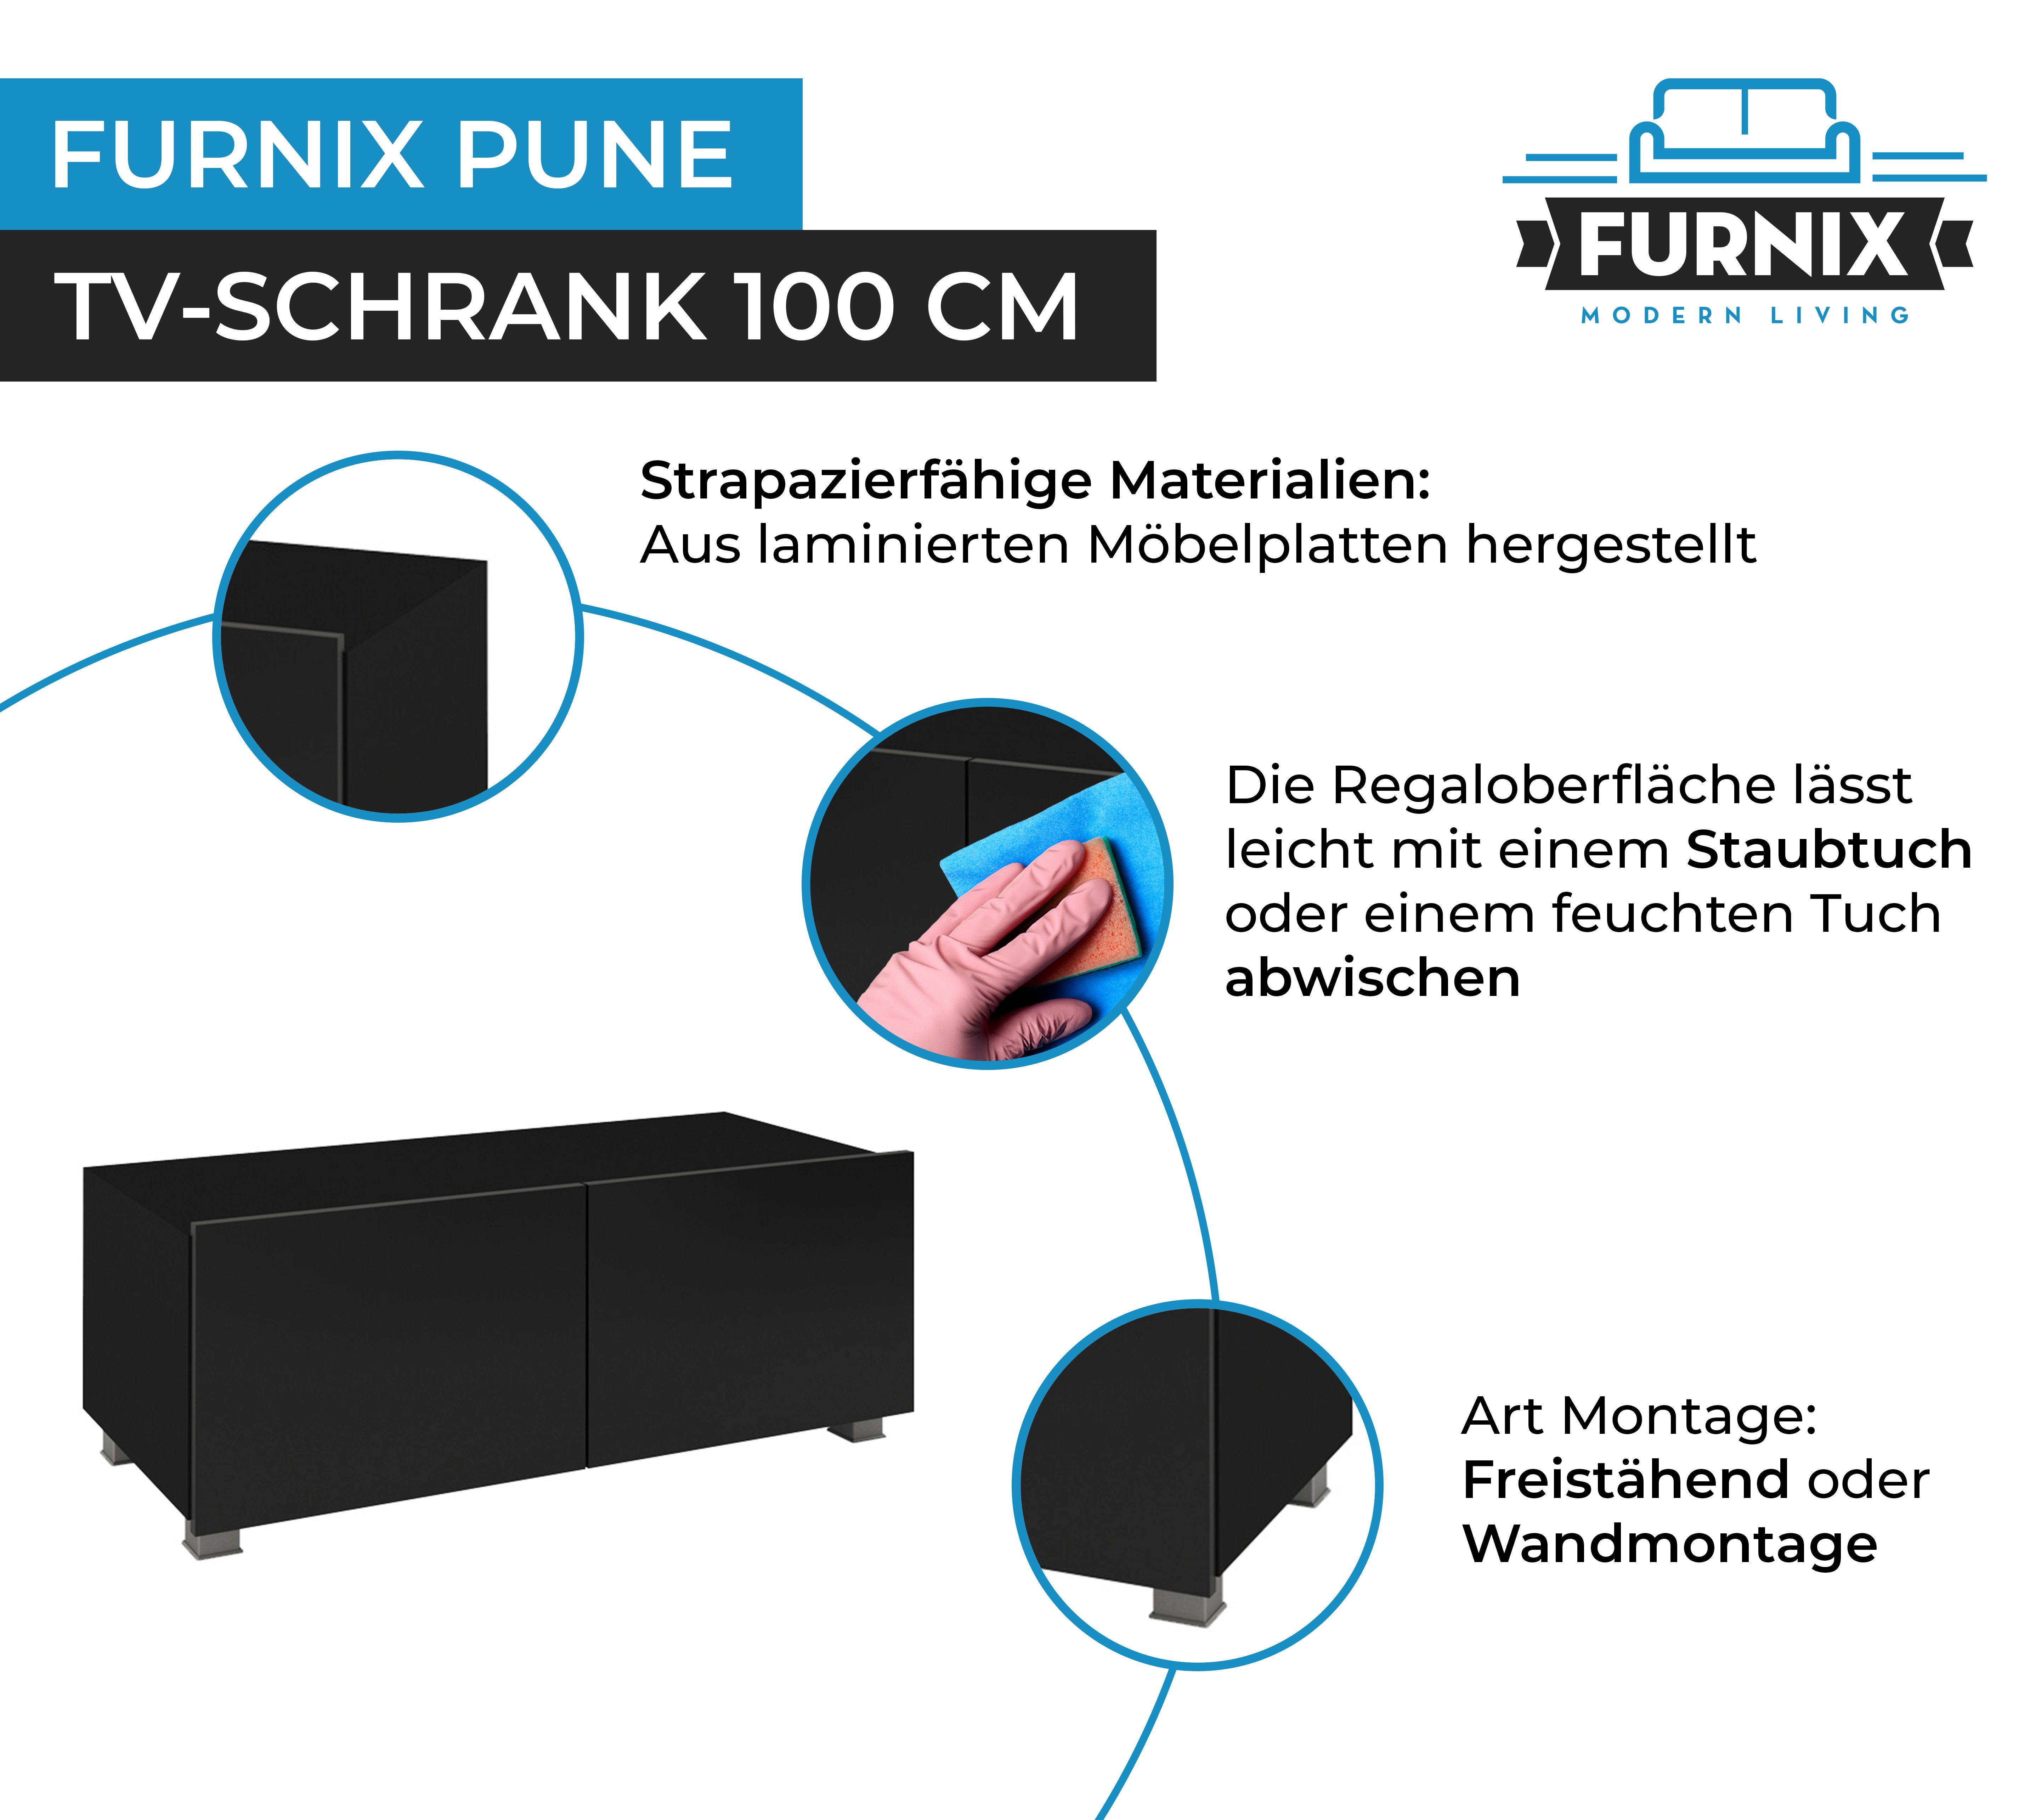 Furnix TV-Schrank PUNE 100 Wahl oder Schwarz/Schwarz fürs Glanz Wandmontage TV-Lowboard Wohnzimmer freistähend nach möglich